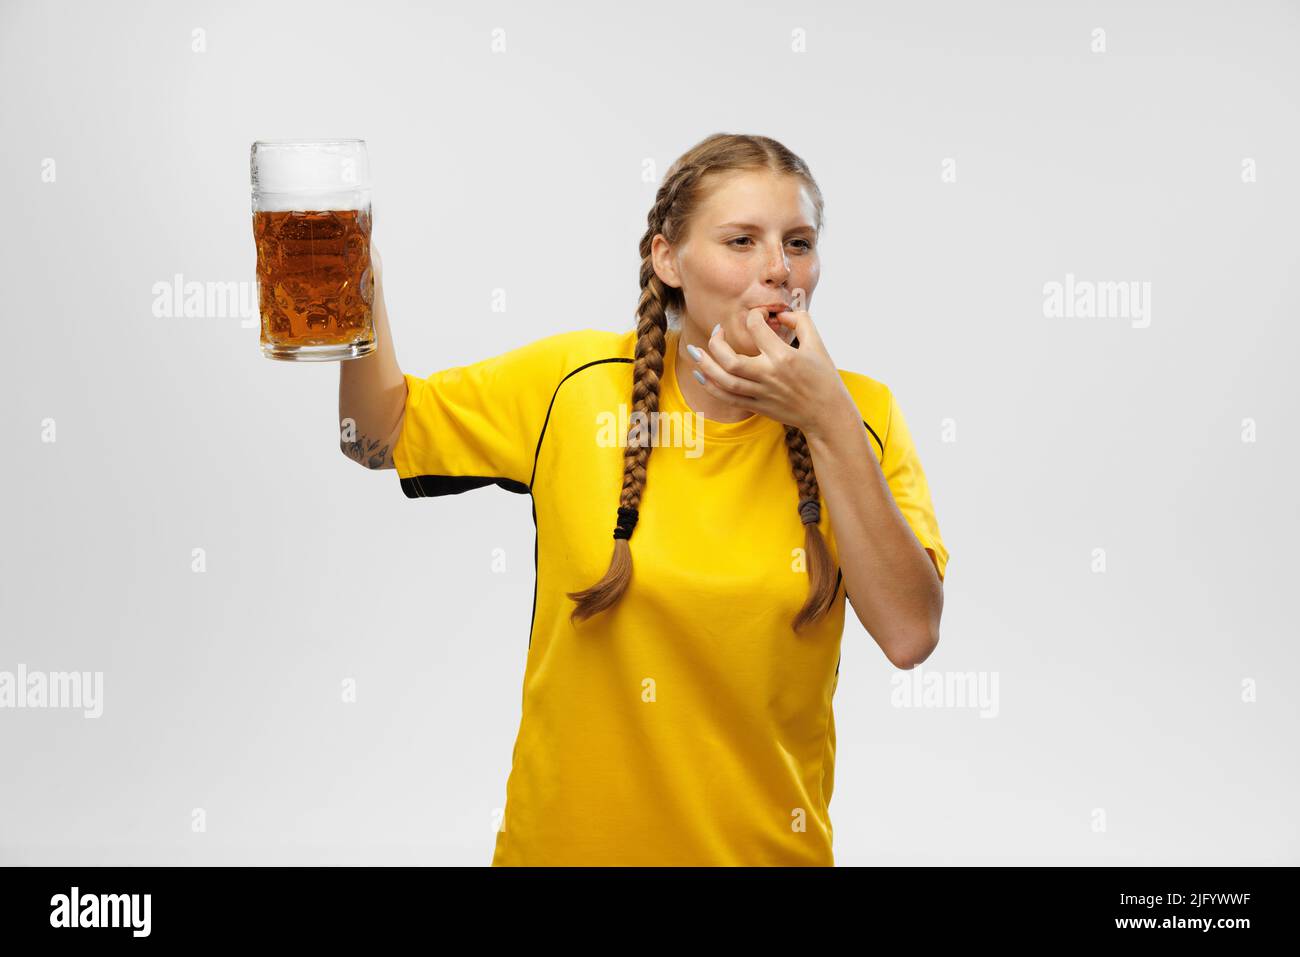 Jeune femme excitée dans un kit de football jaune tenant une tasse à bière et soutient l'équipe préférée. Fans de football, compétition, sport, oktoberfest concept Banque D'Images